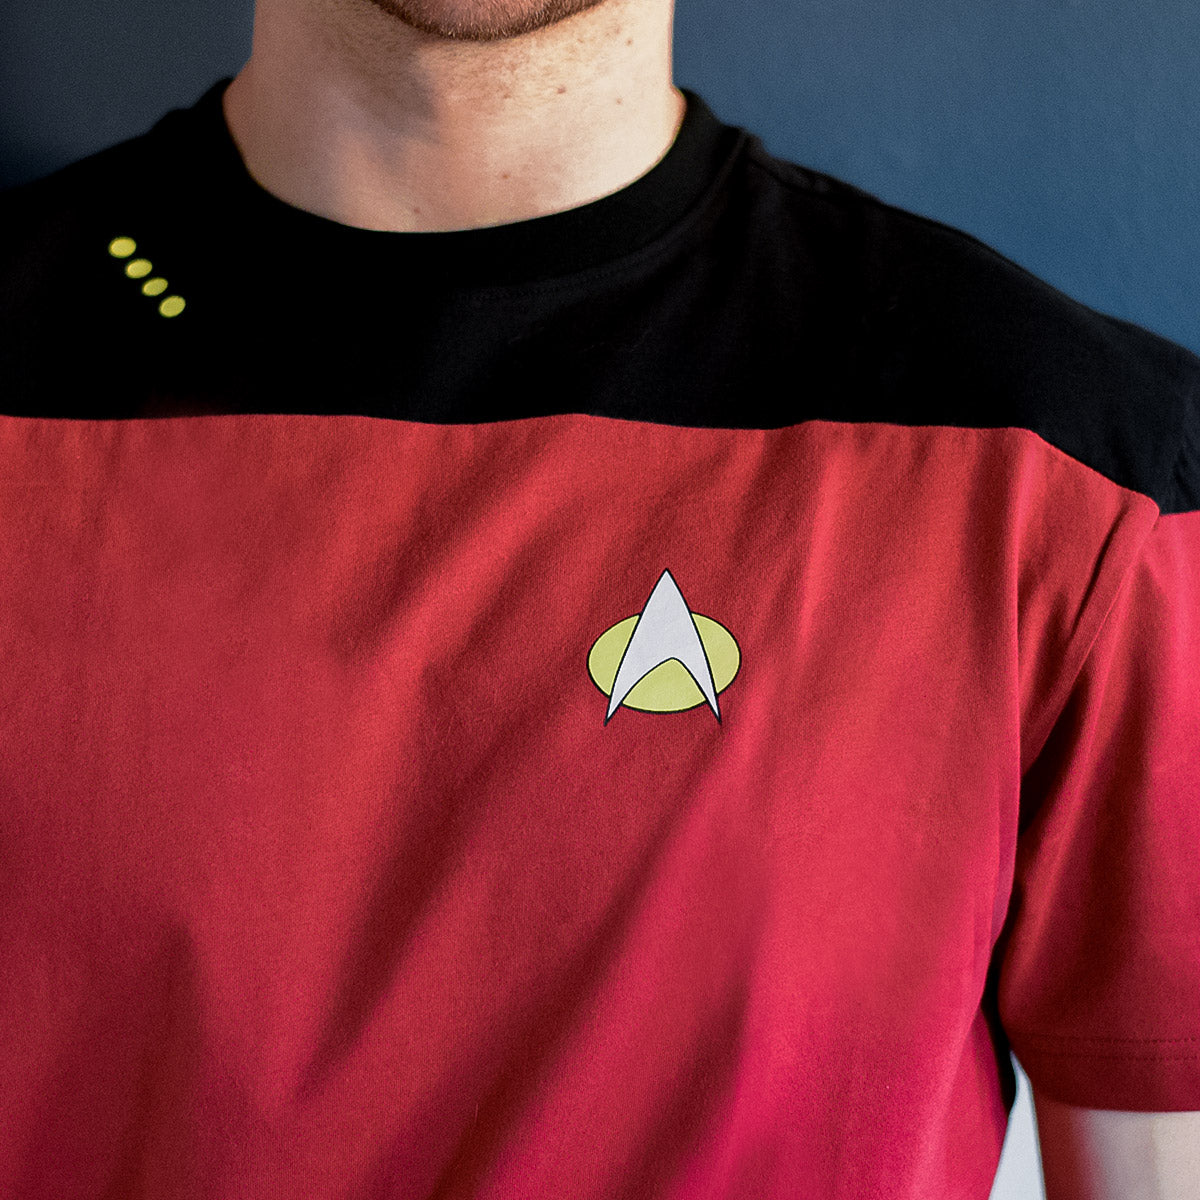 Star Trek: The Next Generation Camiseta de uniforme de mando